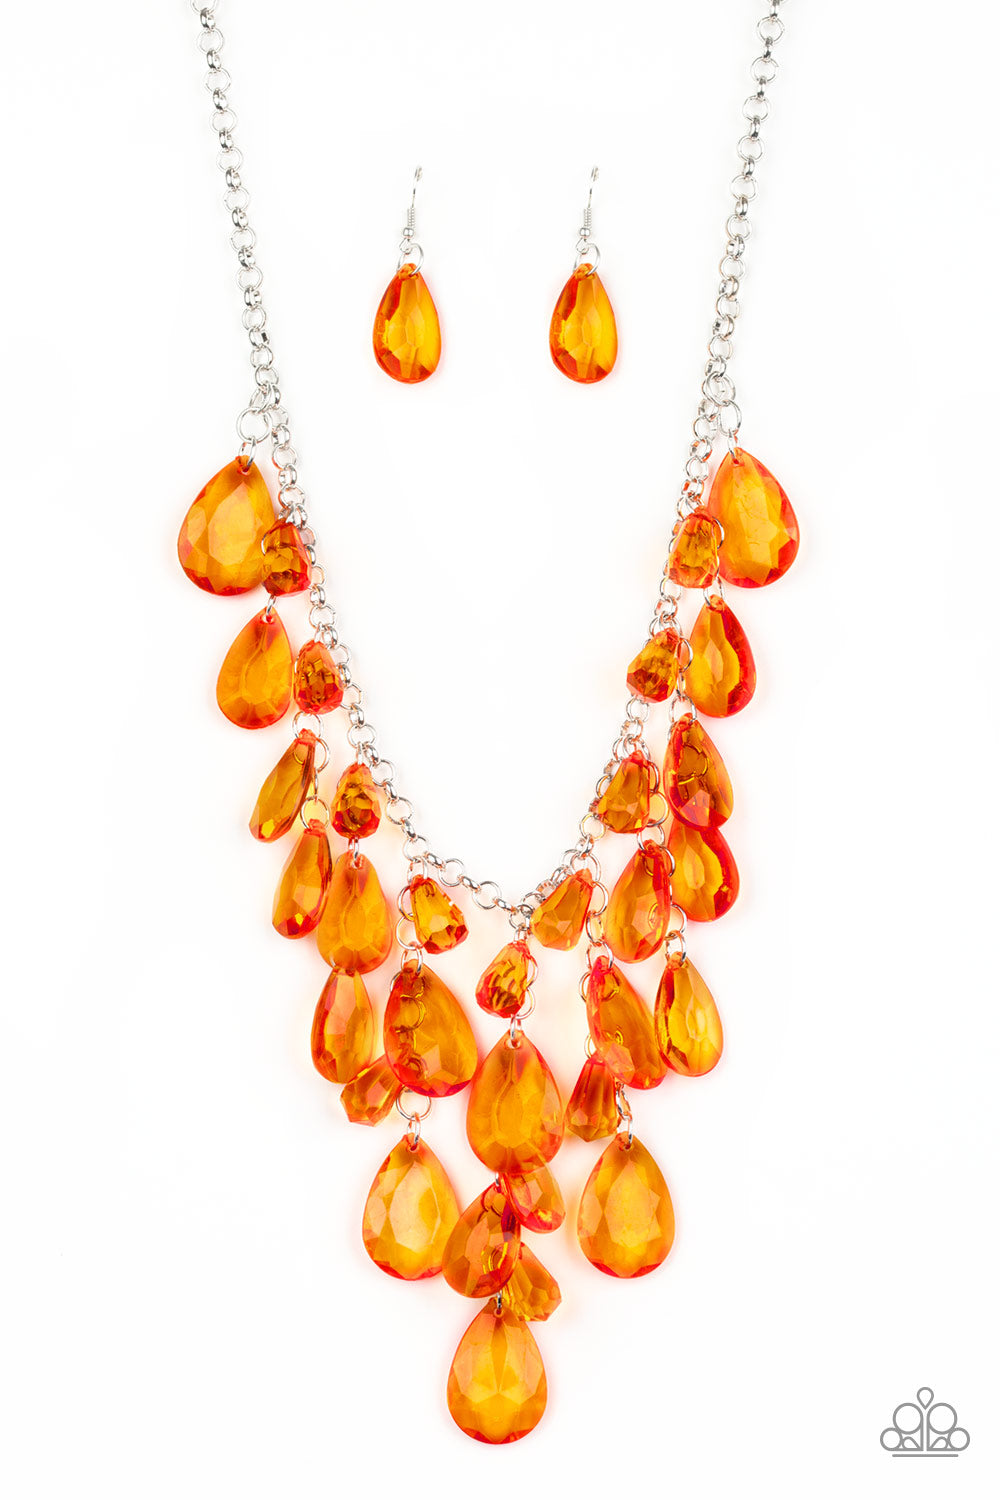 Irresistible Iridescence Orange Paparazzi Necklace Cashmere Pink Jewels - Cashmere Pink Jewels & Accessories, Cashmere Pink Jewels & Accessories - Paparazzi